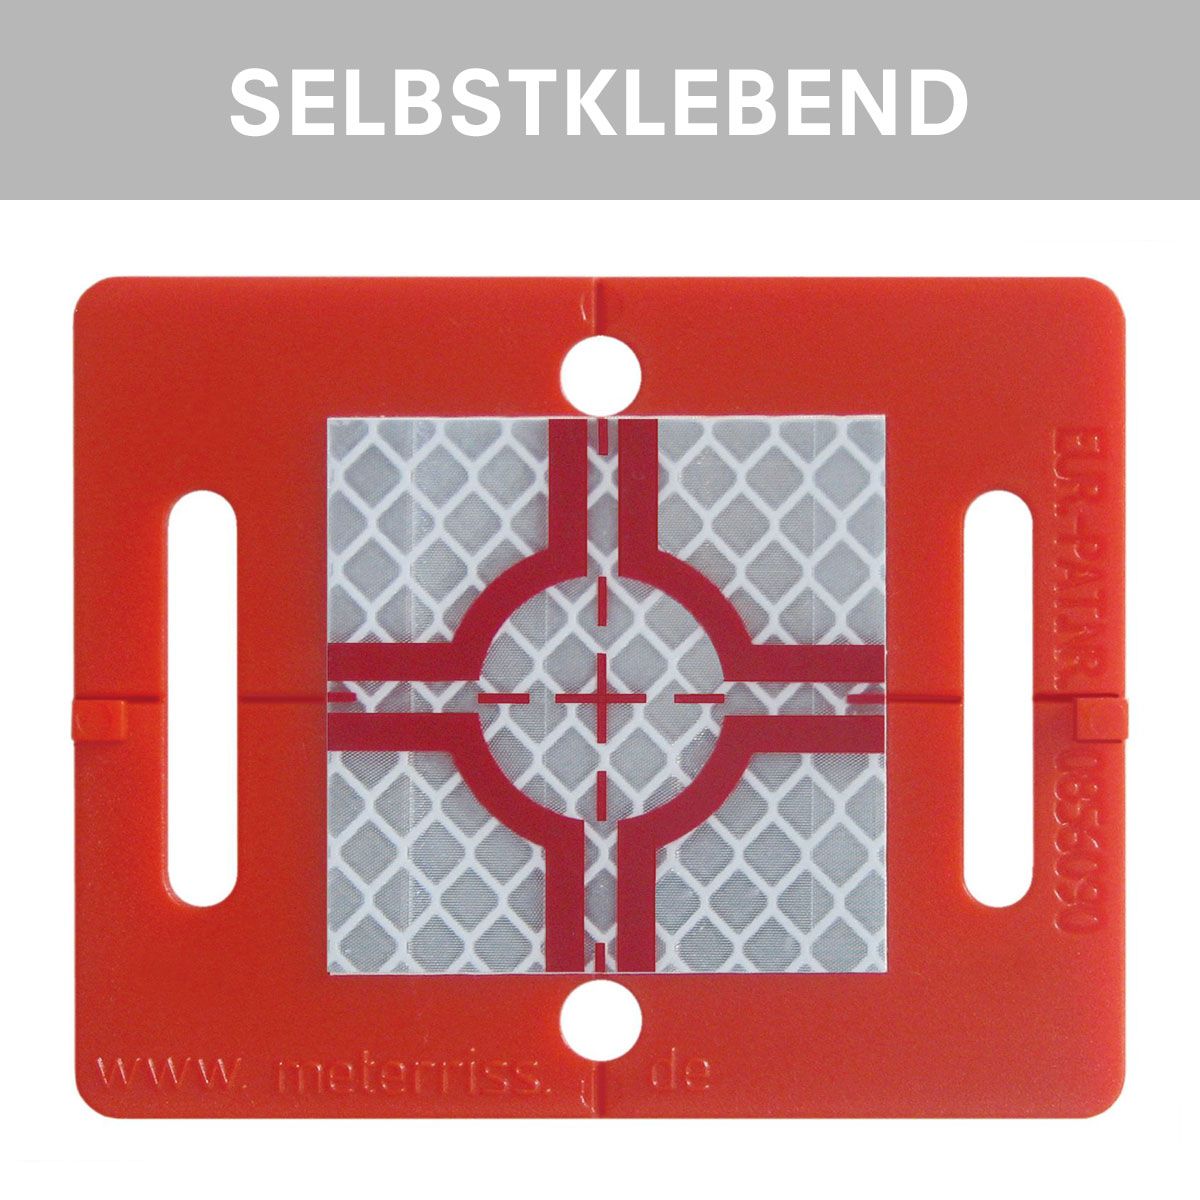 Vermessungsplakette RS 51, rot, selbstklebend, von Rothbucher Systeme